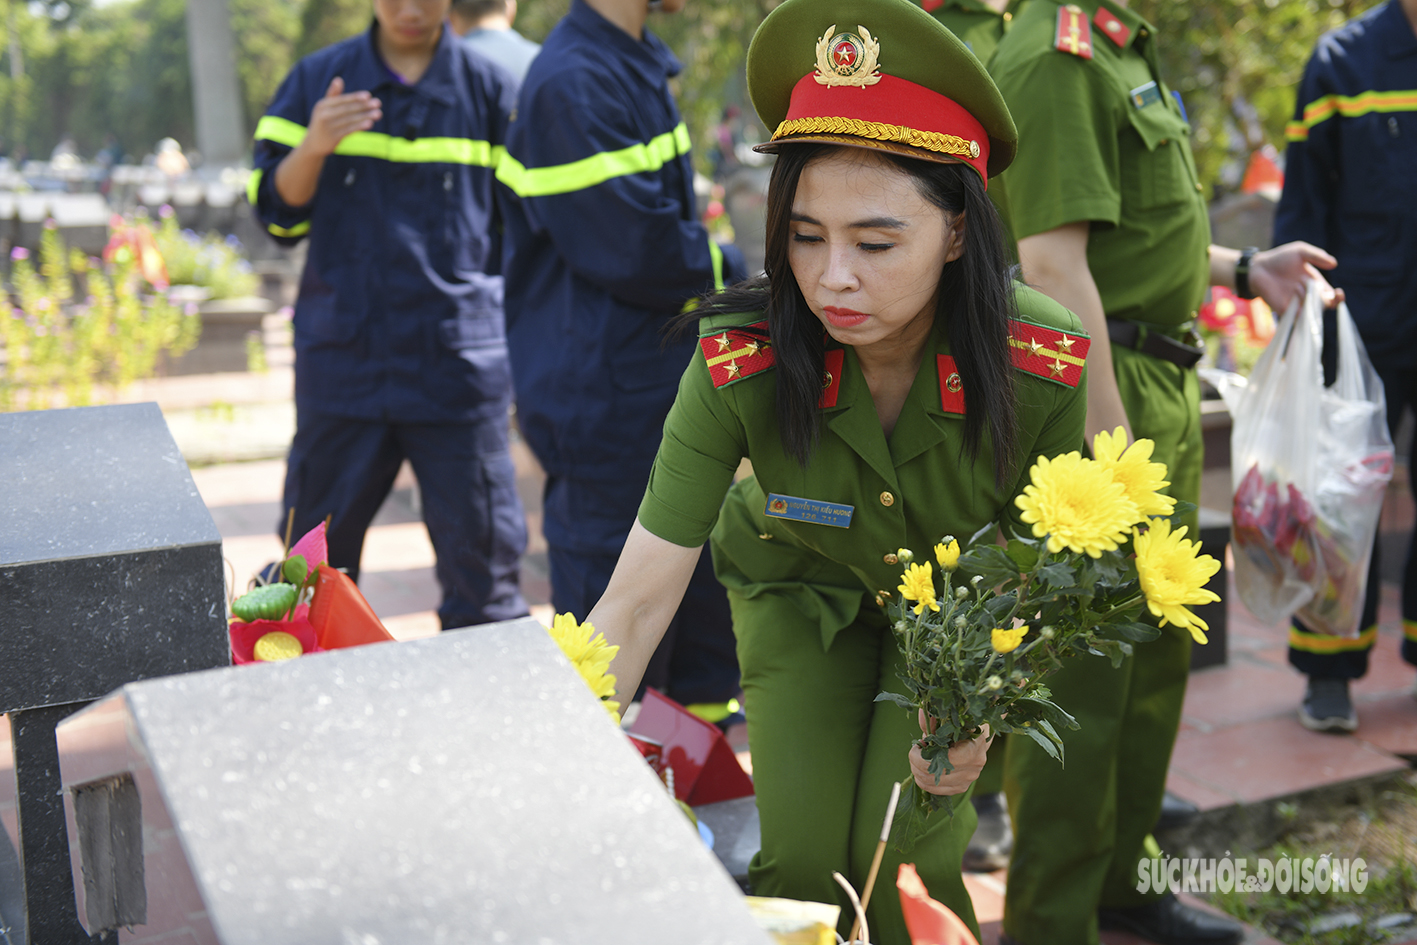 Xúc động hình ảnh các chiến sĩ PCCC thắp hương tri ân tại nghĩa trang Hà Nội - Ảnh 7.